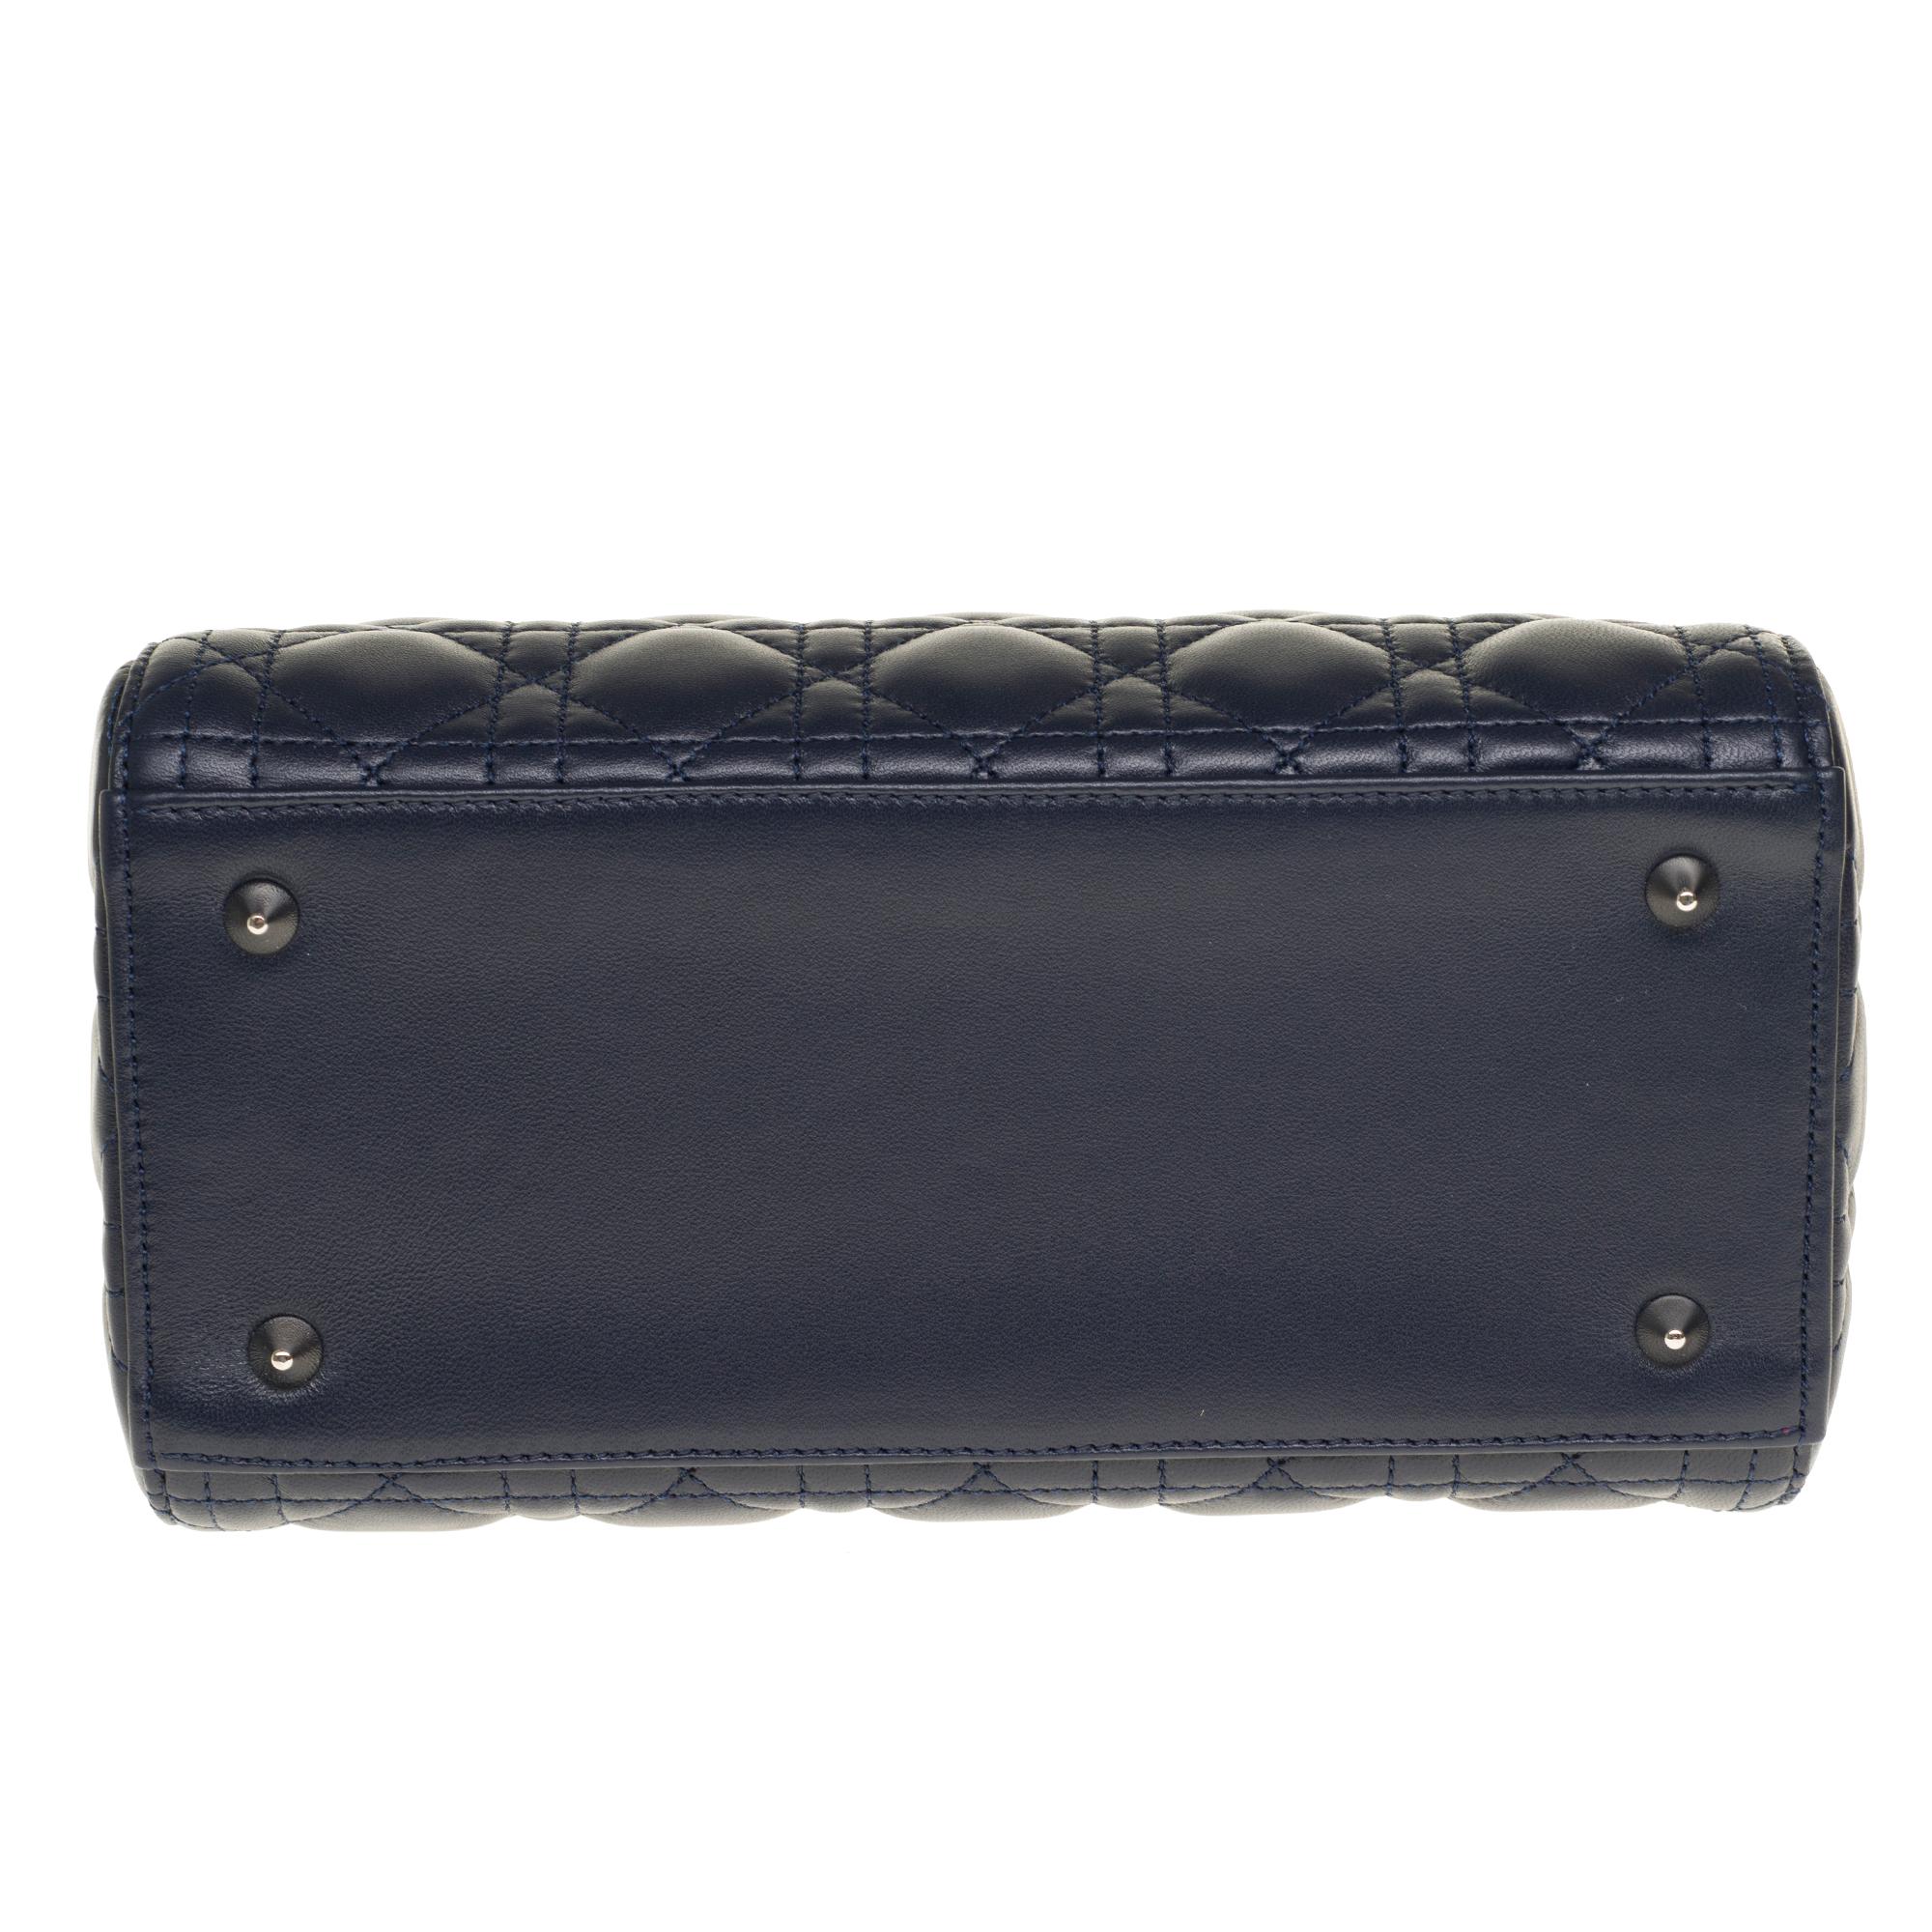  Christian Dior Lady Dior Medium size handbag in blue navy cannage leather, PHW 4